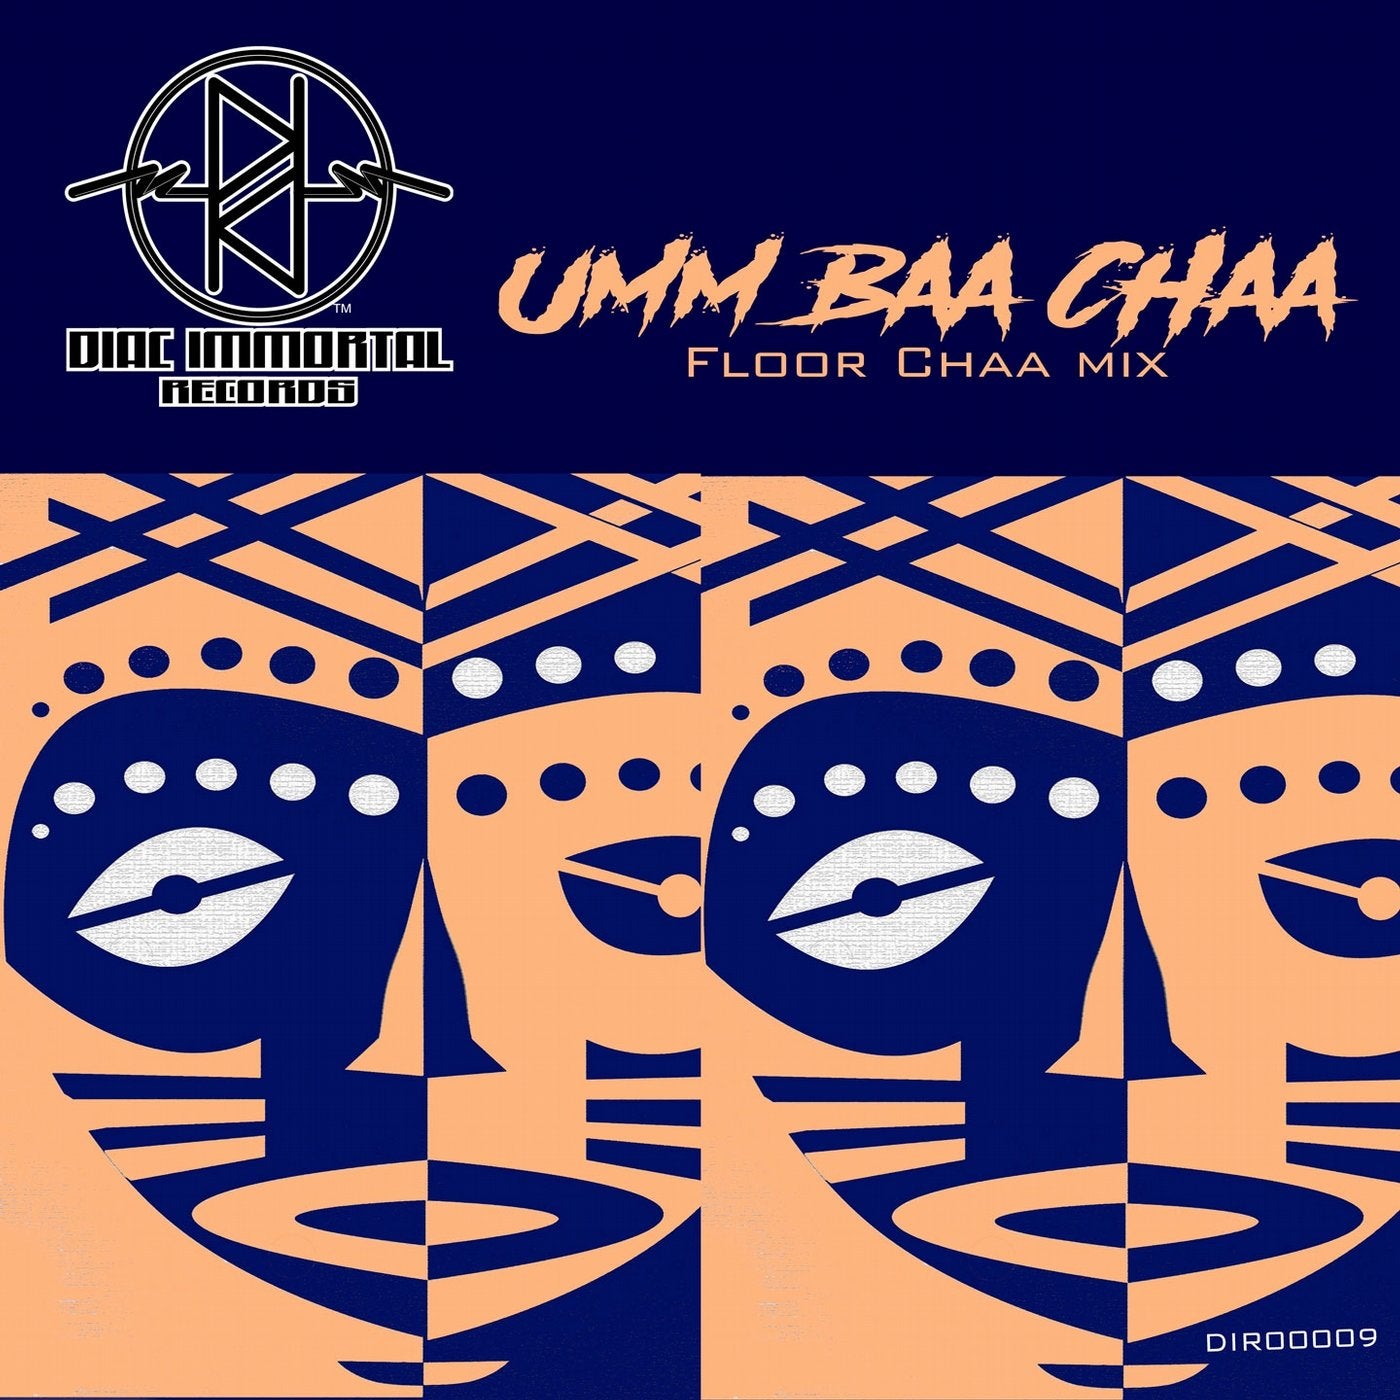 Umm Baa Chaa (Floor Chaa Mix)